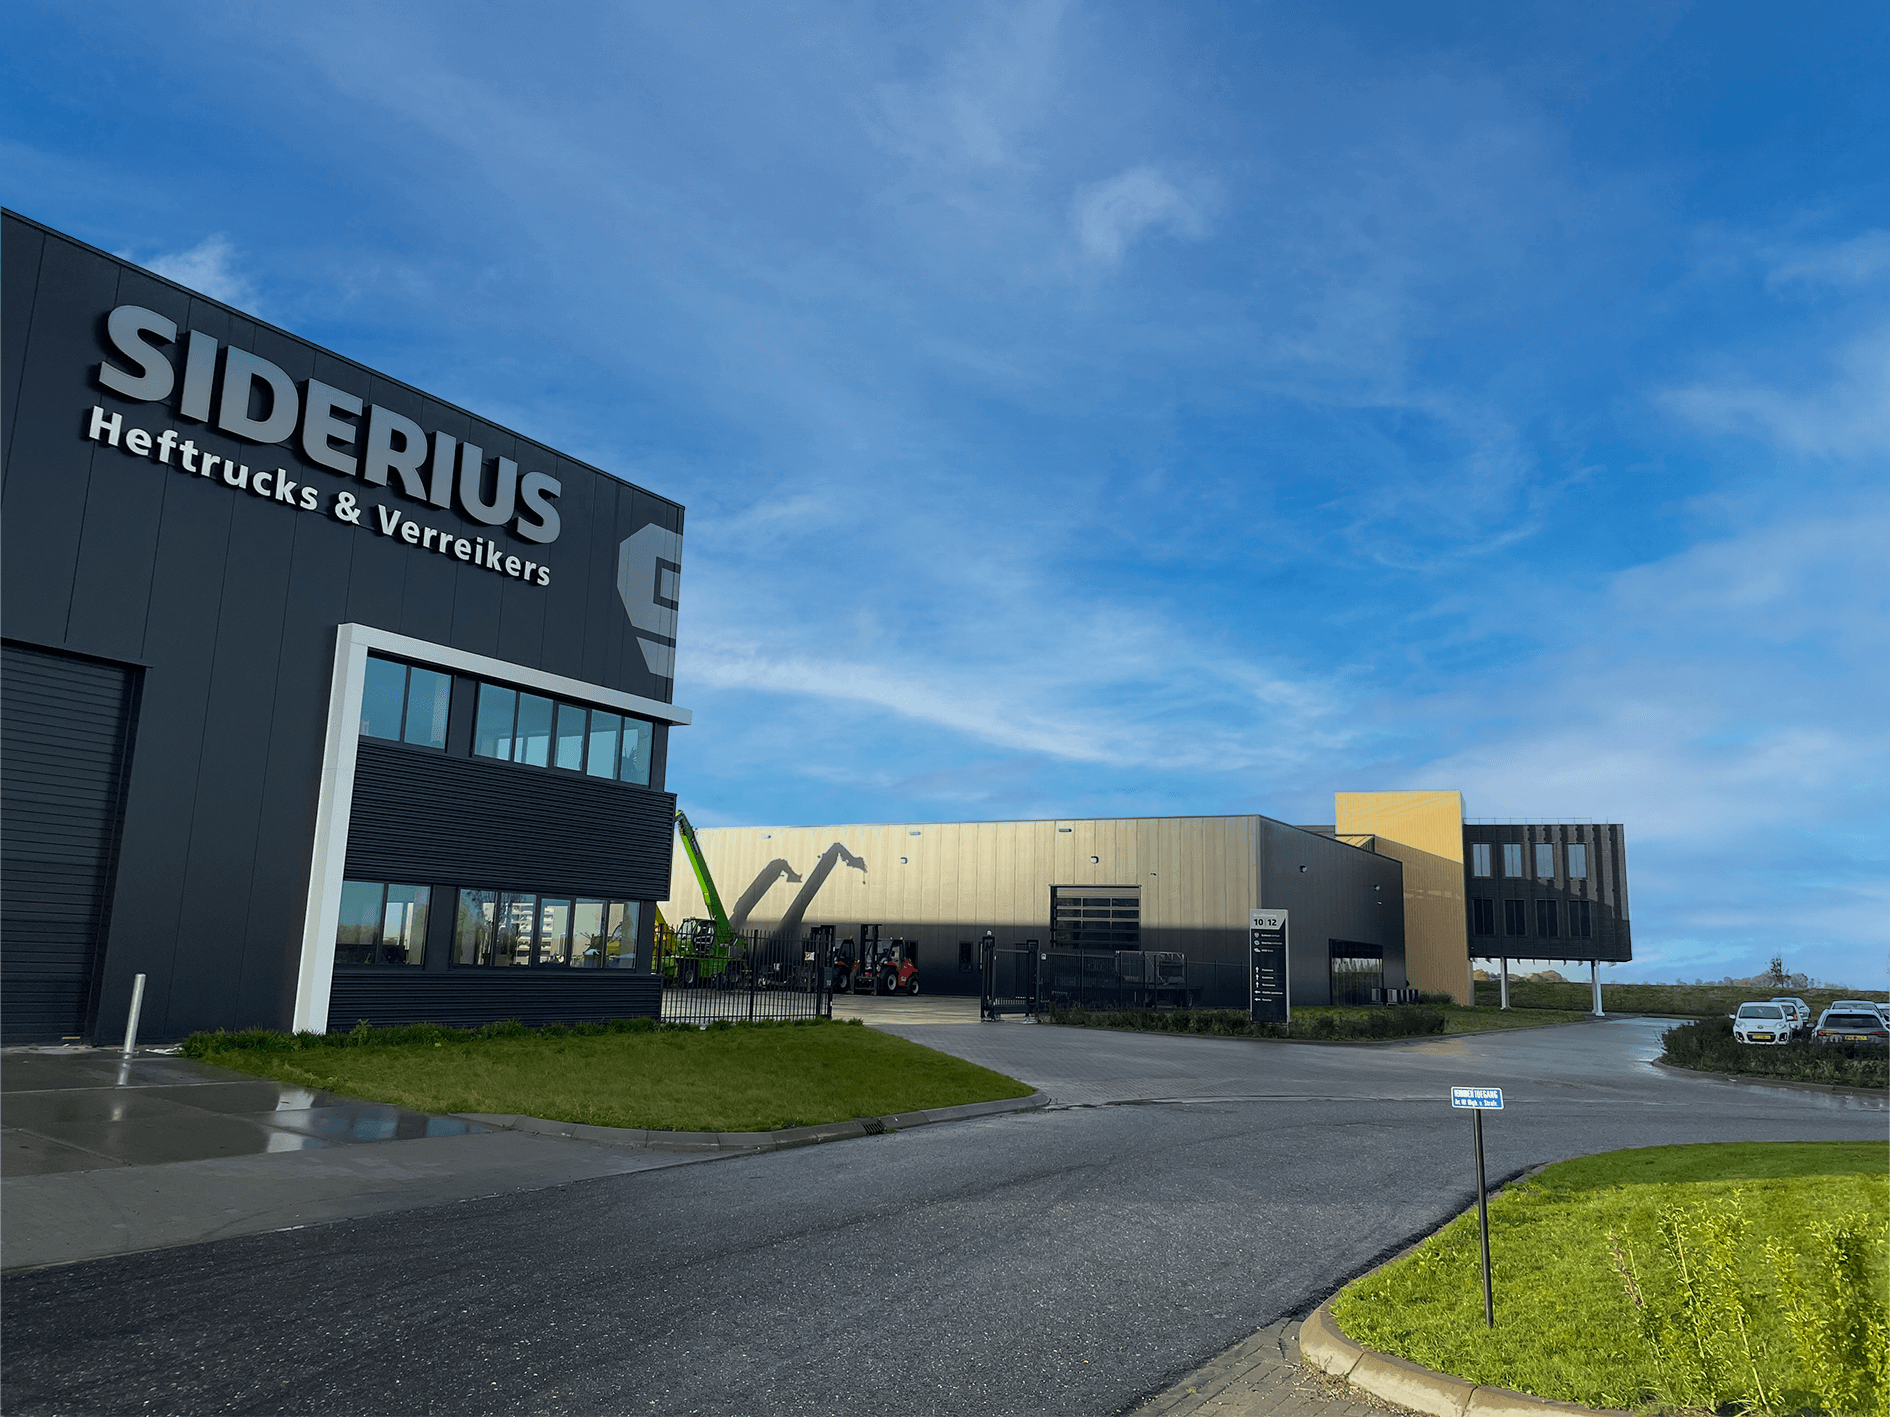 Modern bedrijfspand van Siderius Heftrucks & Verreikers gelegen aan de Brailleweg 10 in Leeuwarden